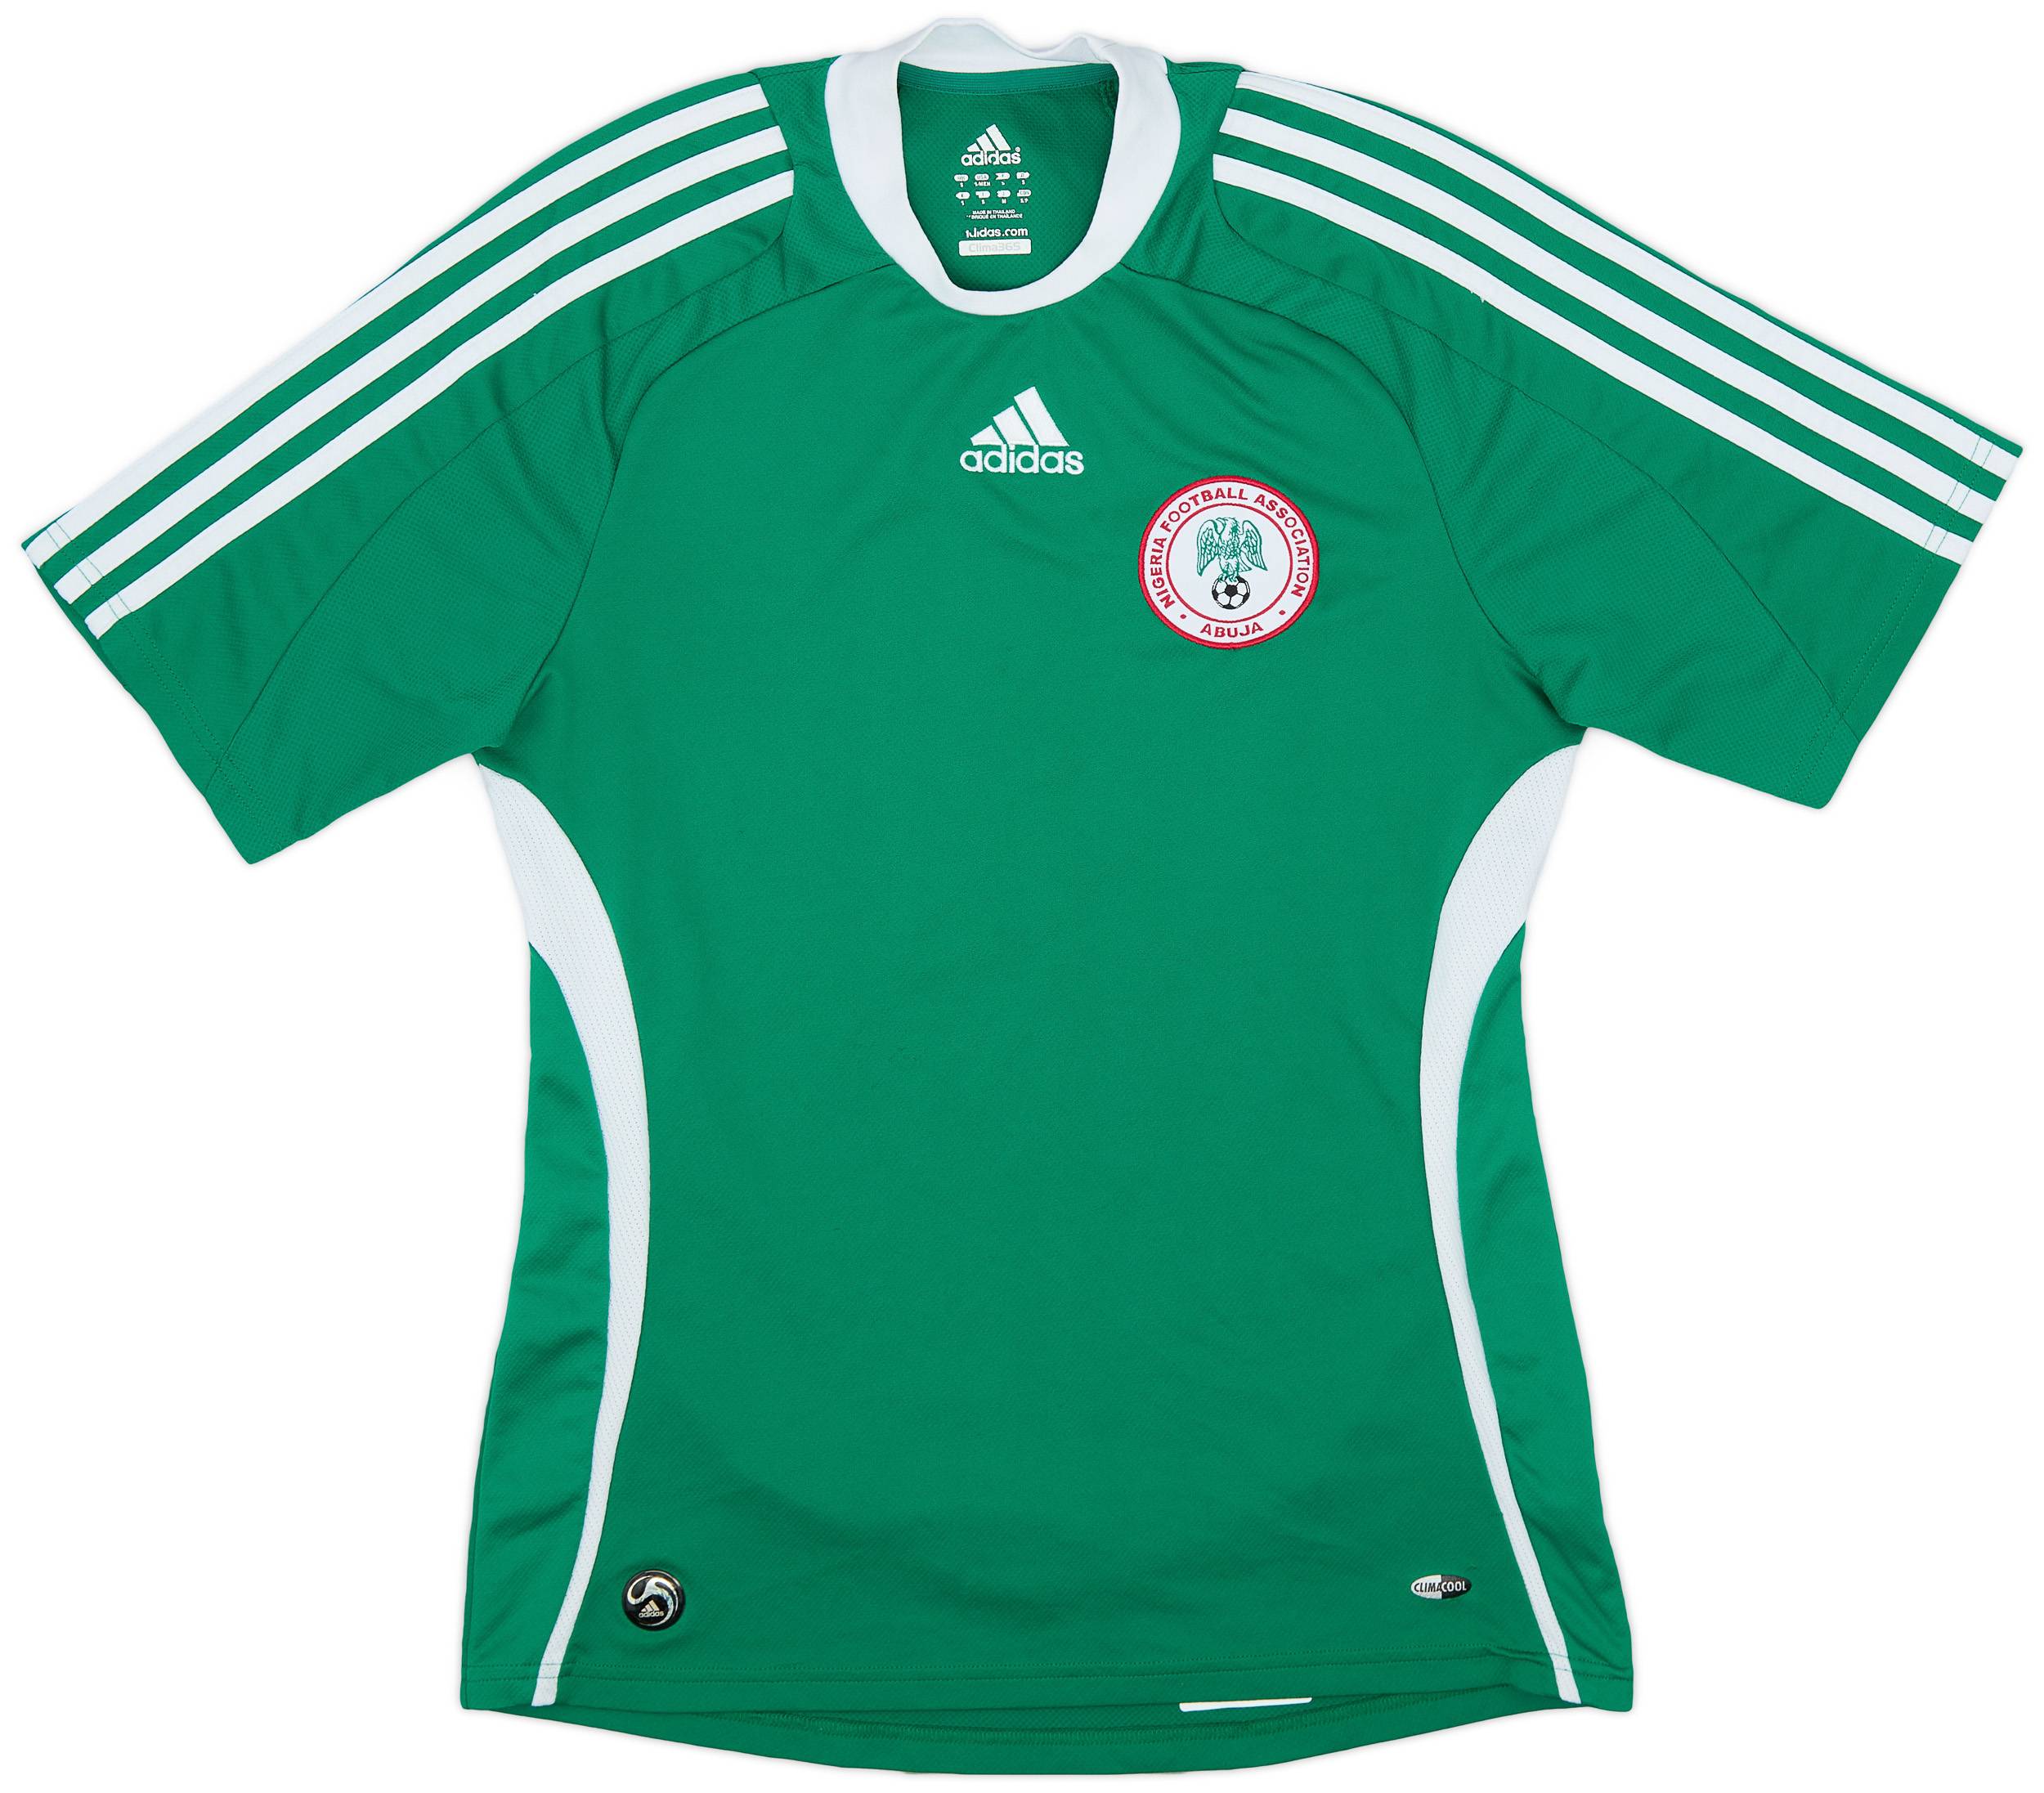 2008-09 Nigeria Home Shirt - 8/10 - (S)